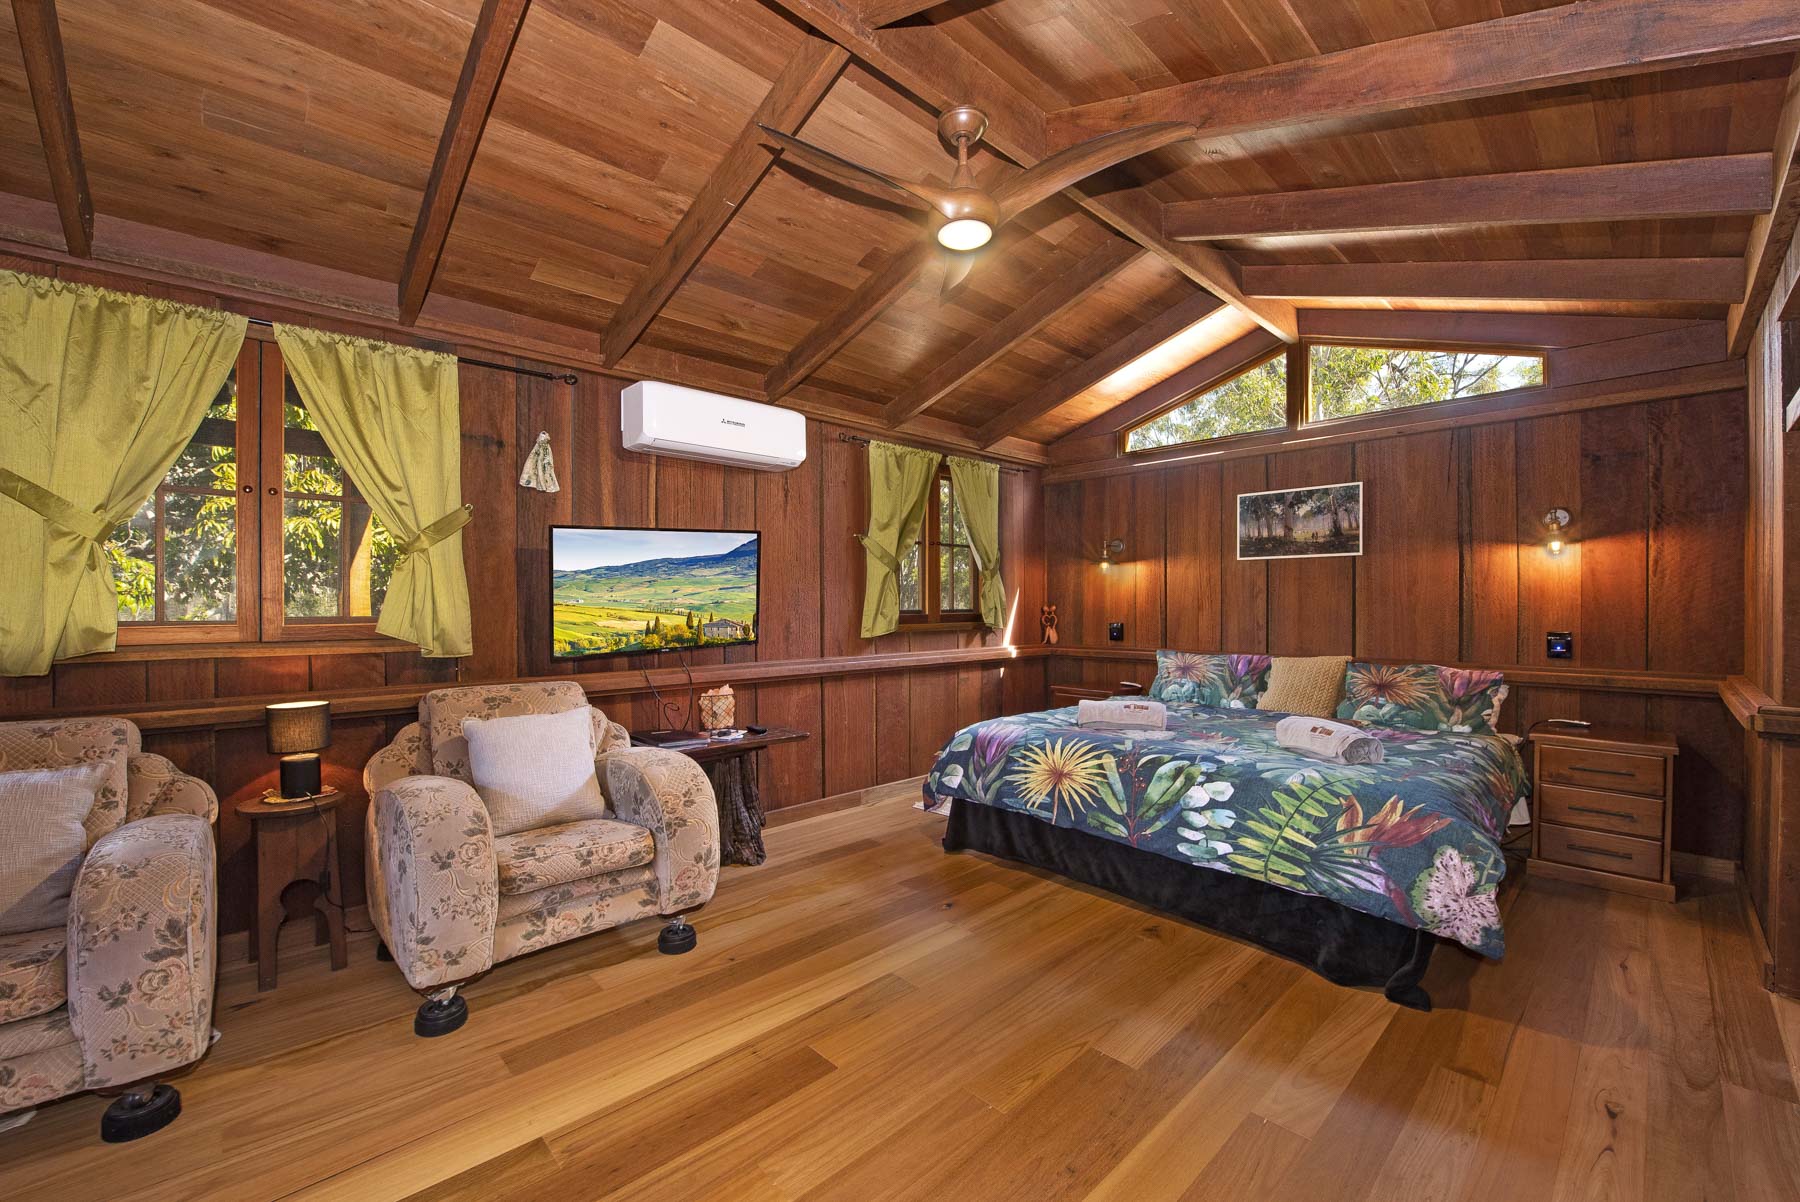 Unique rustic cabin bedroom